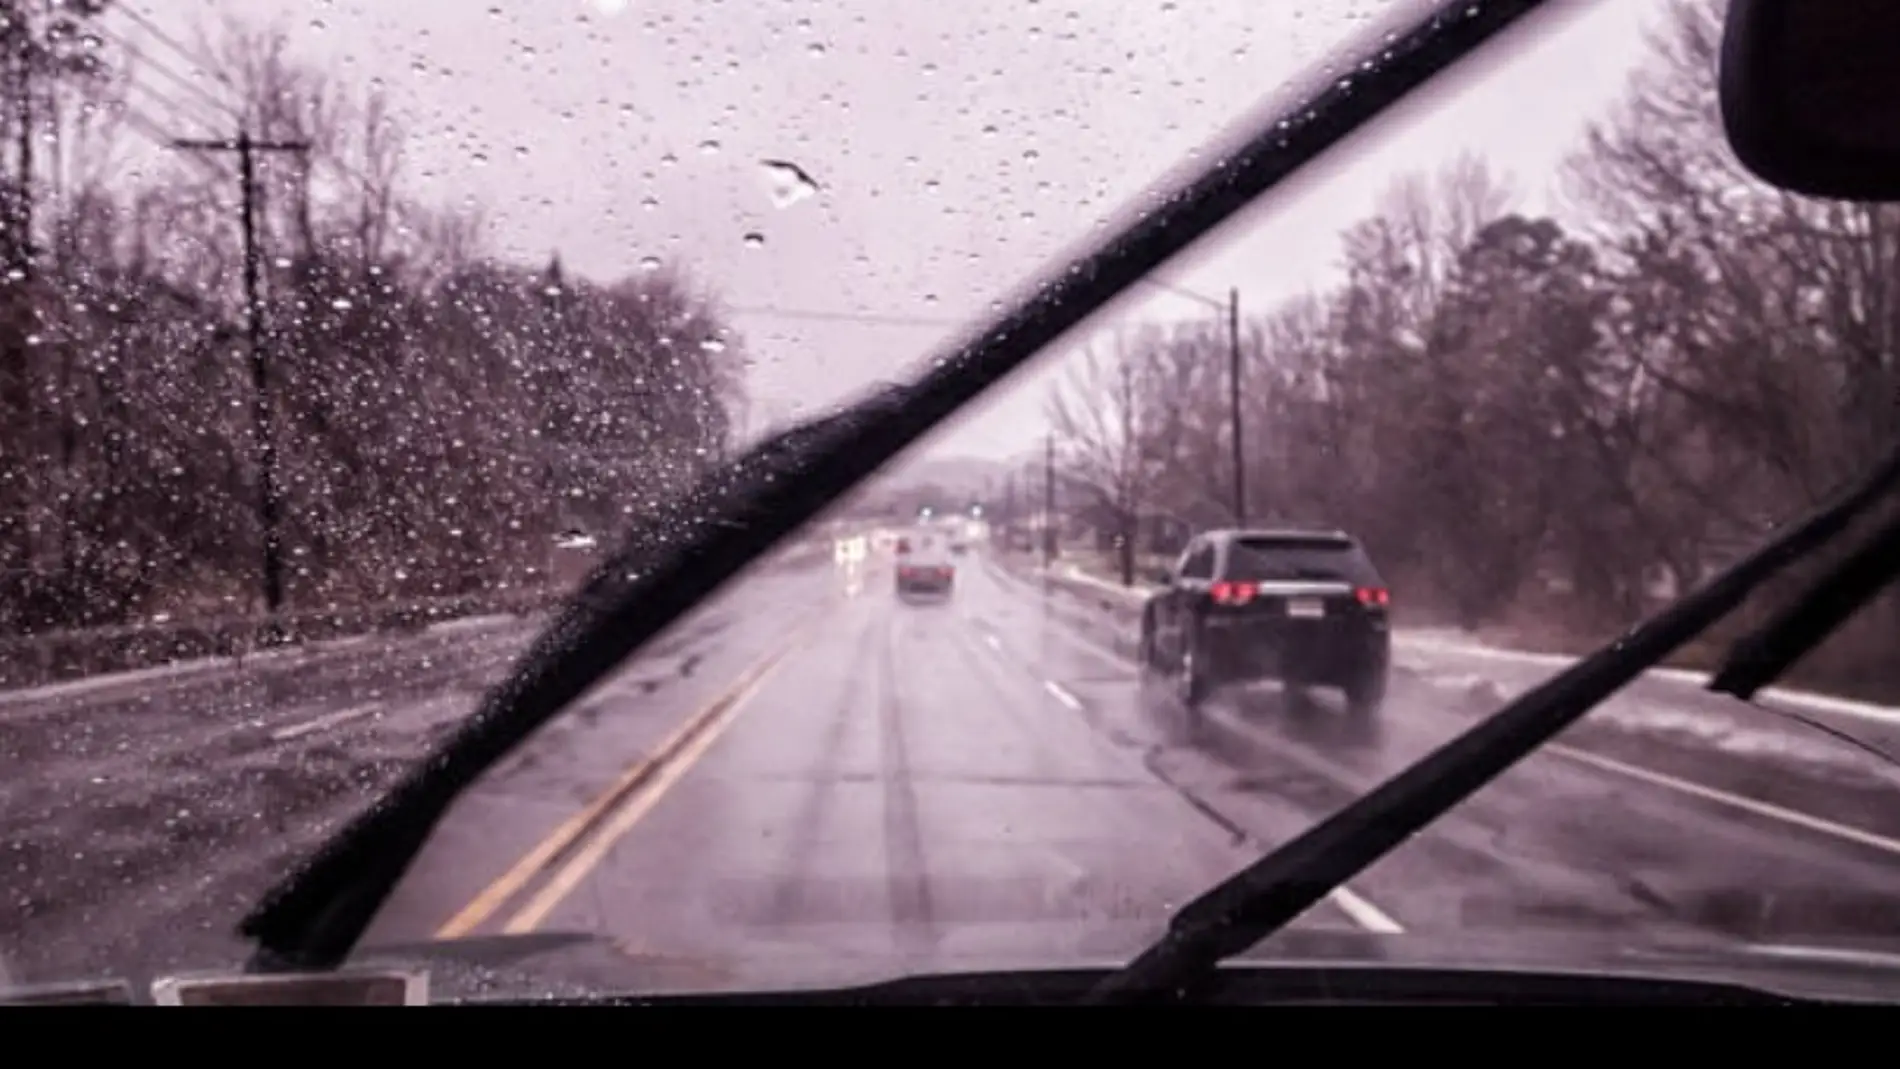 Conducir con lluvia